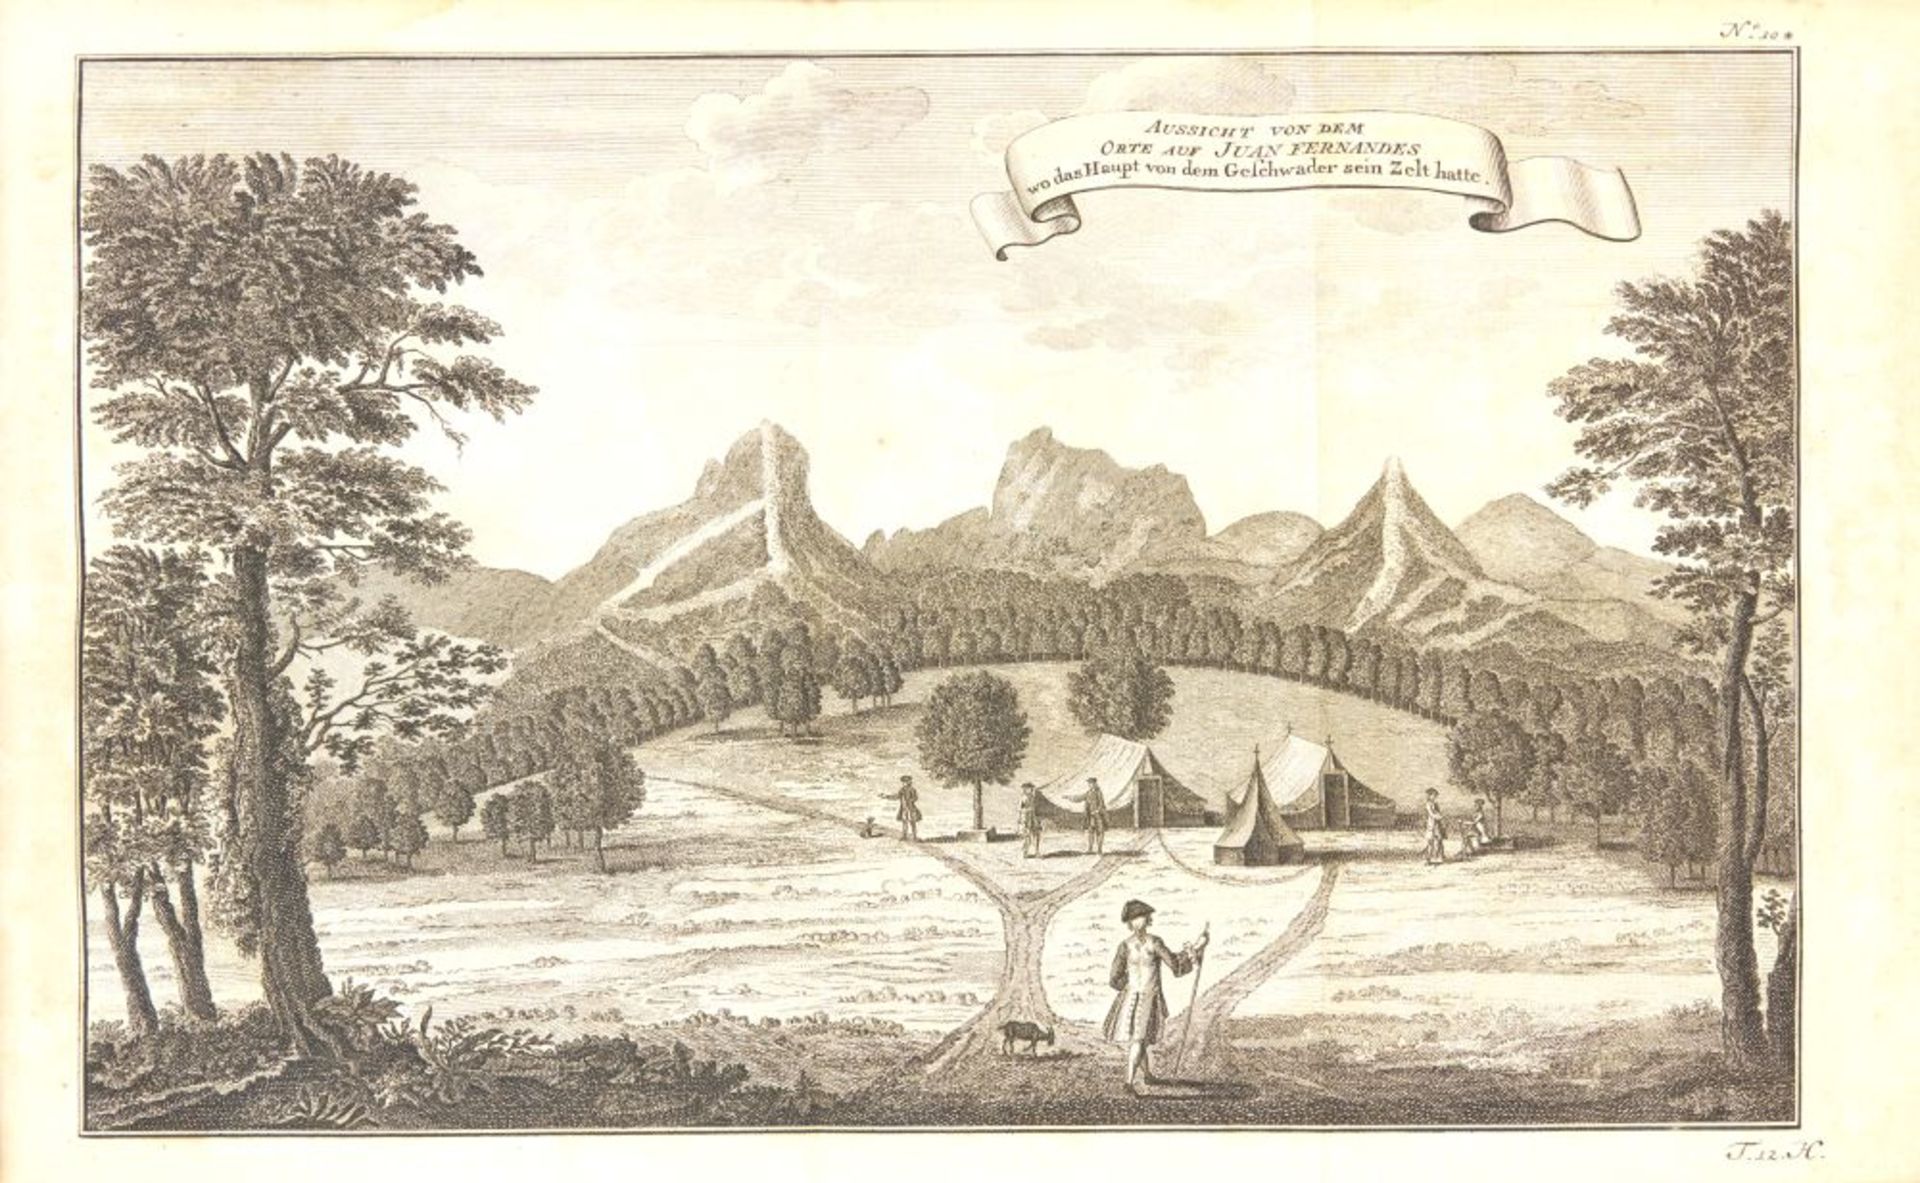 J. J. Schwabe, Reisebeschreibungen, Bd. XII. Lpz 1754.